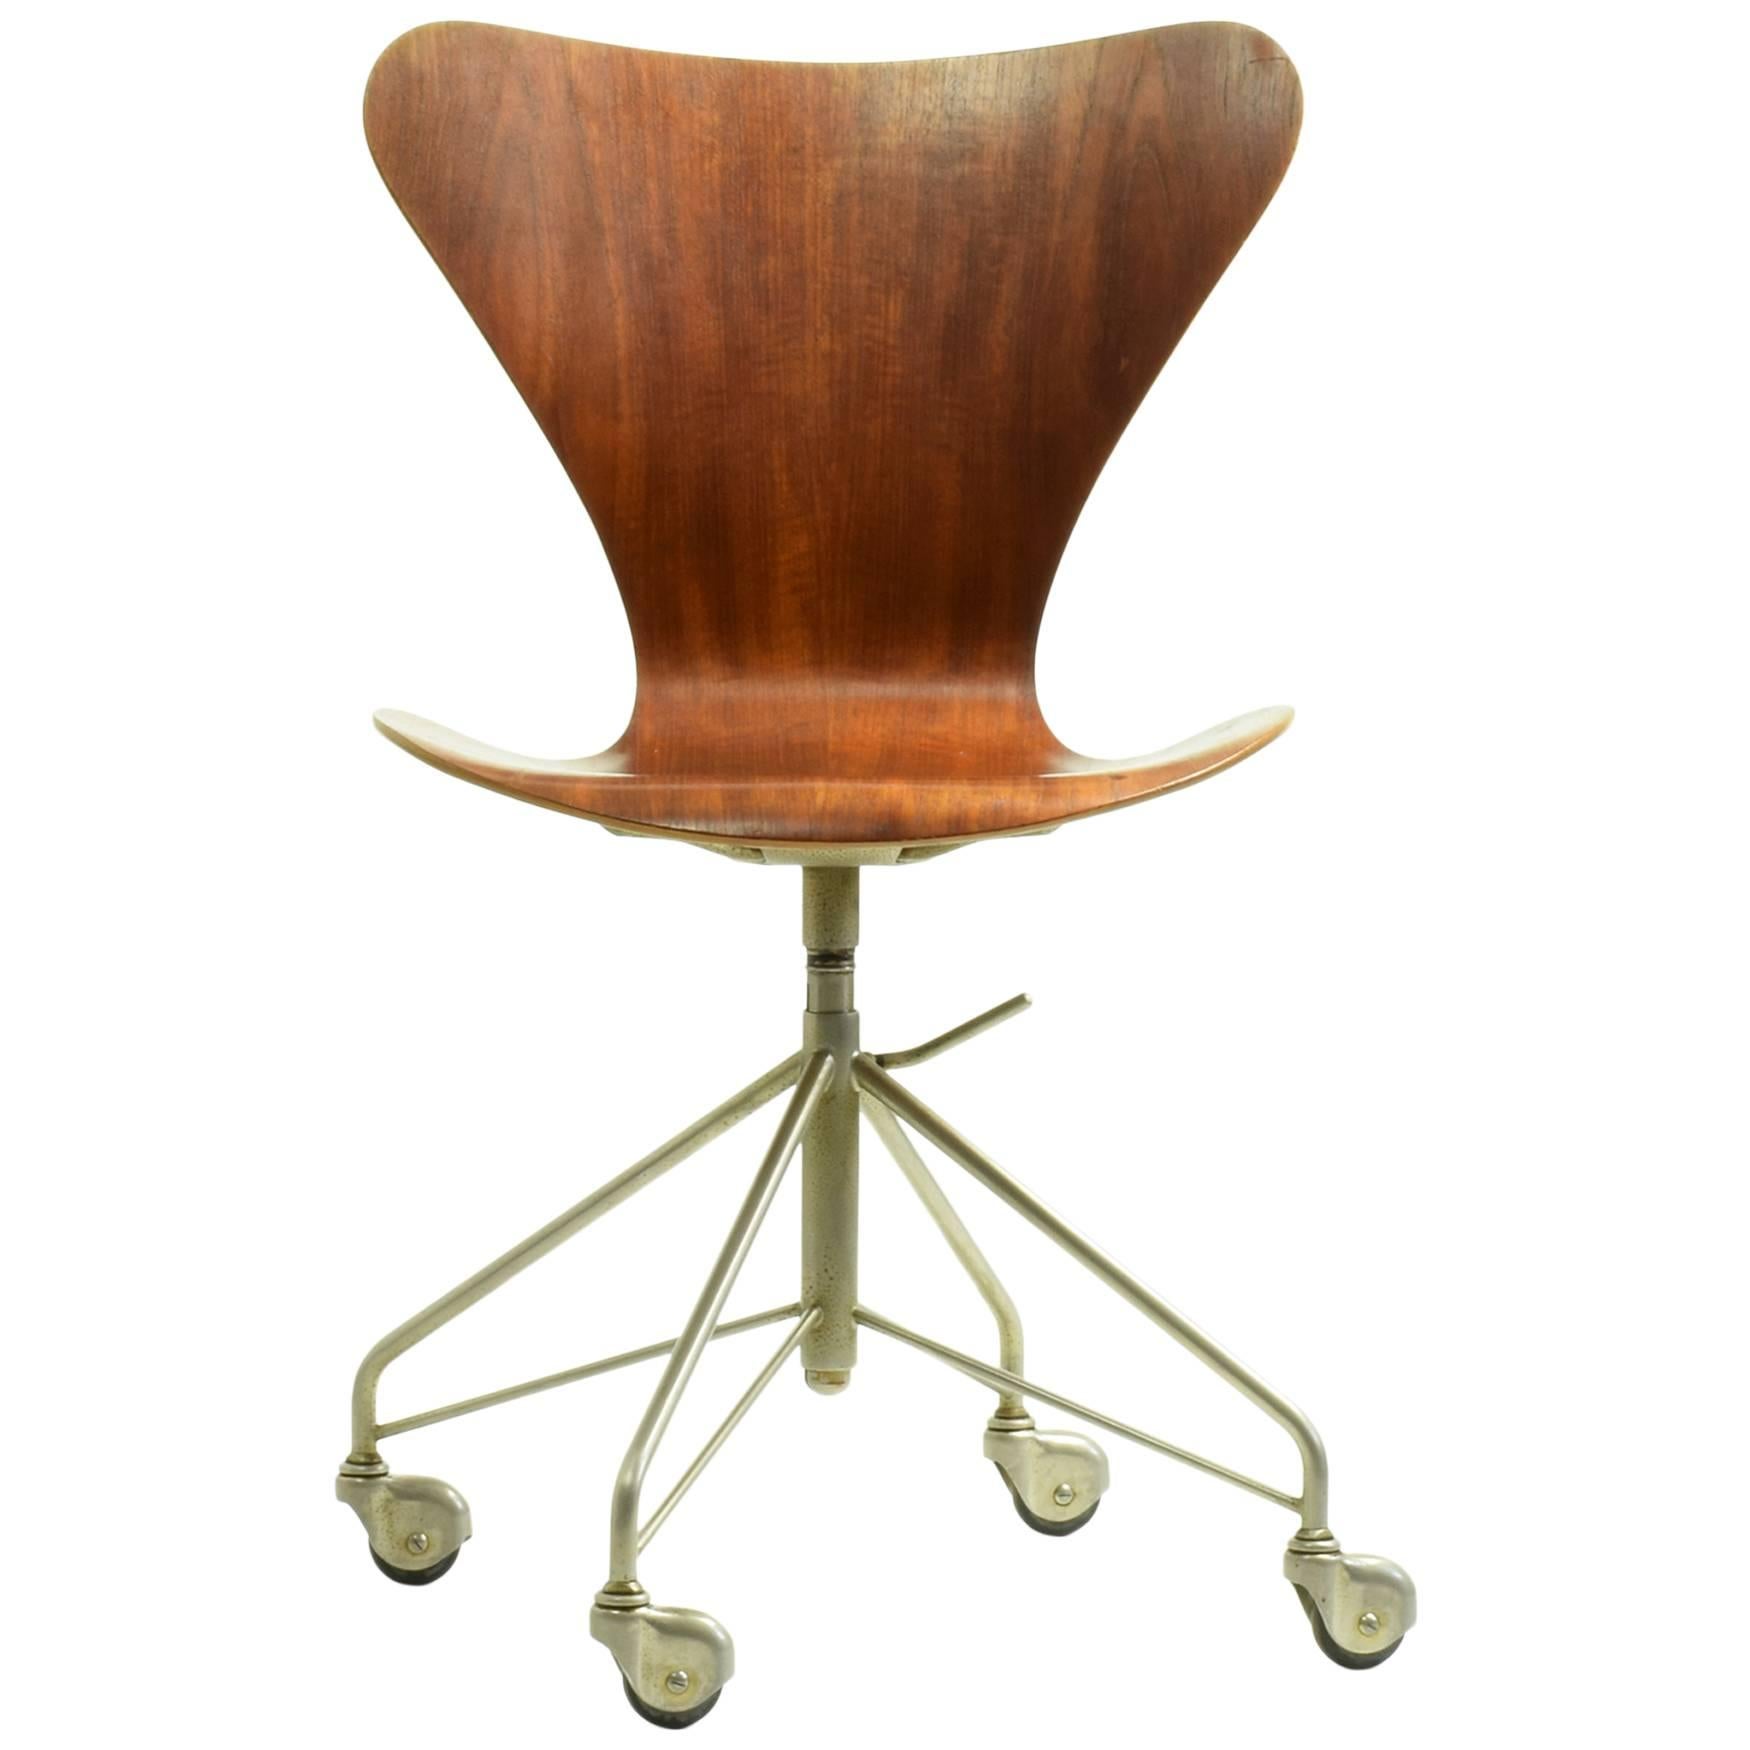 Arne Jacobsen Model 3117 Desk Chair, 1955